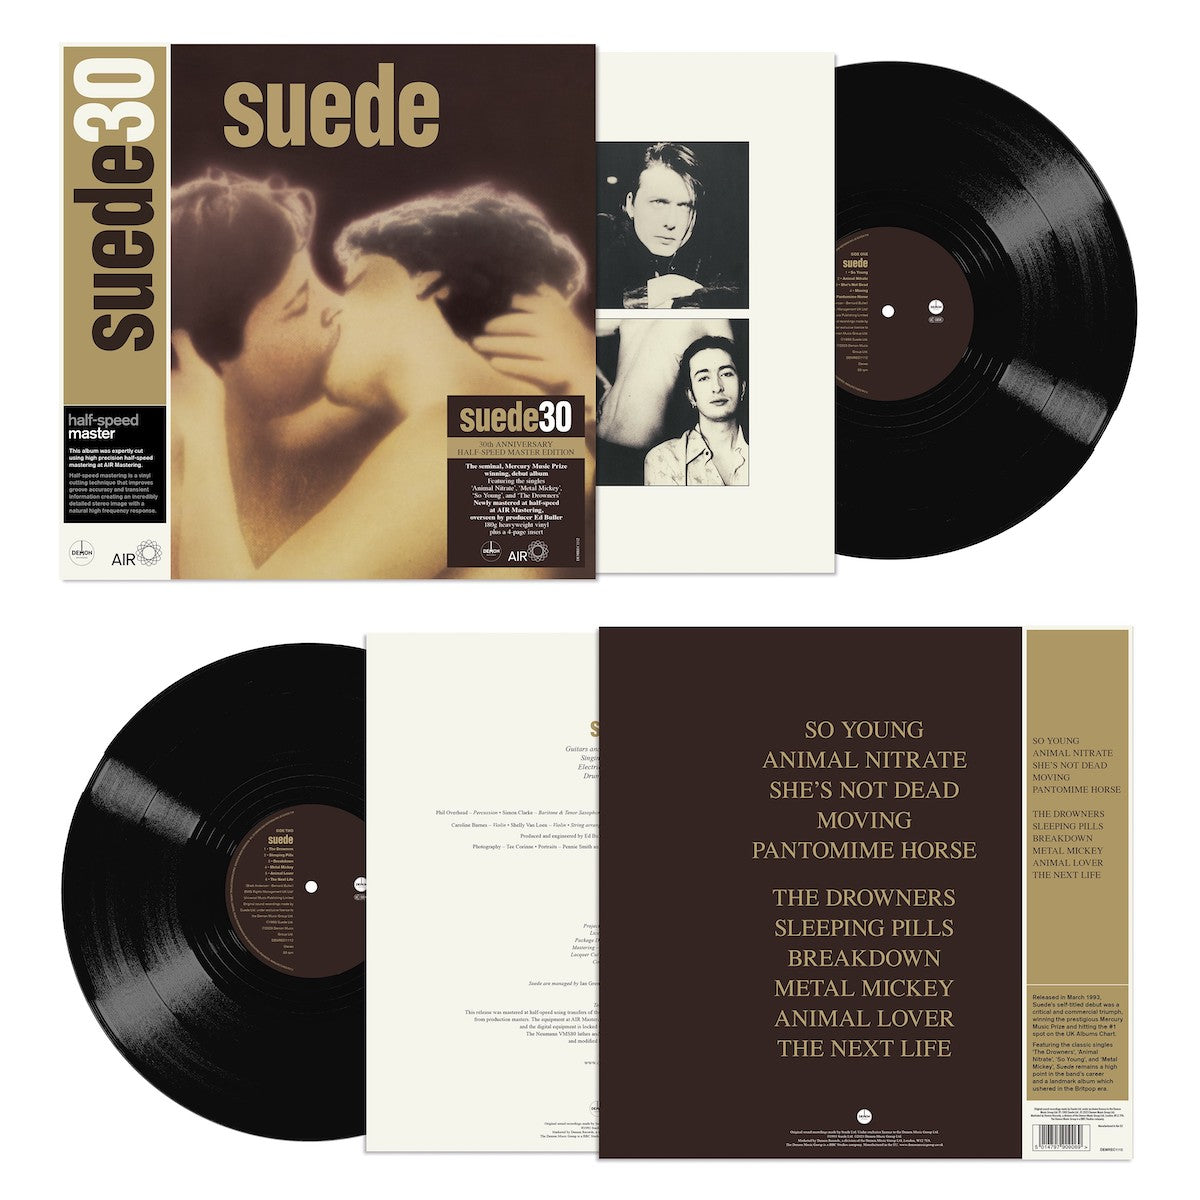 Suede (30th Anniversary Edition) [half-speed master edition]: 180g Vinyl LP